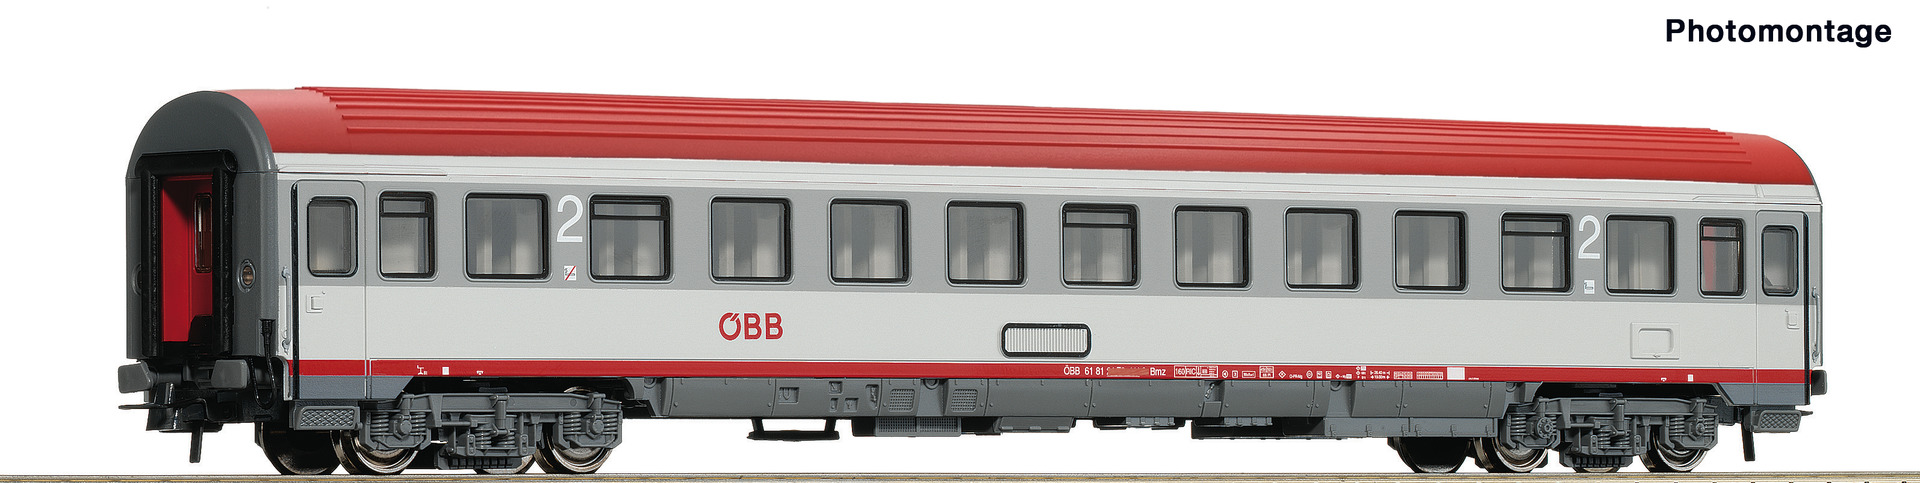 H0 Kl. DB Roco 64993 Neu & OVP Personenwagen 2